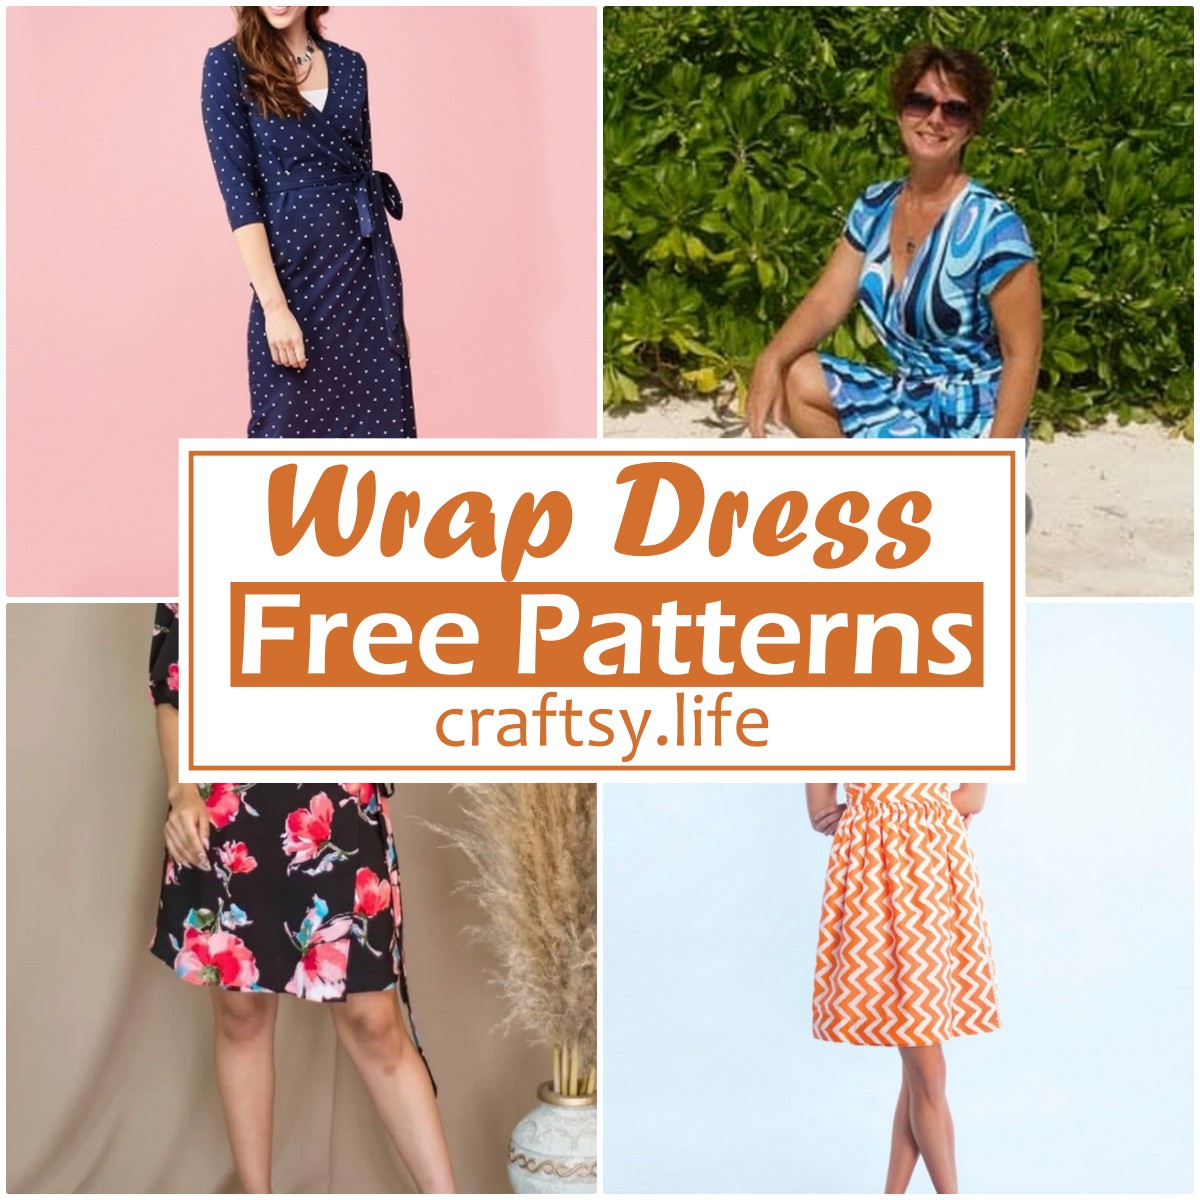 Free Wrap Dress Patterns